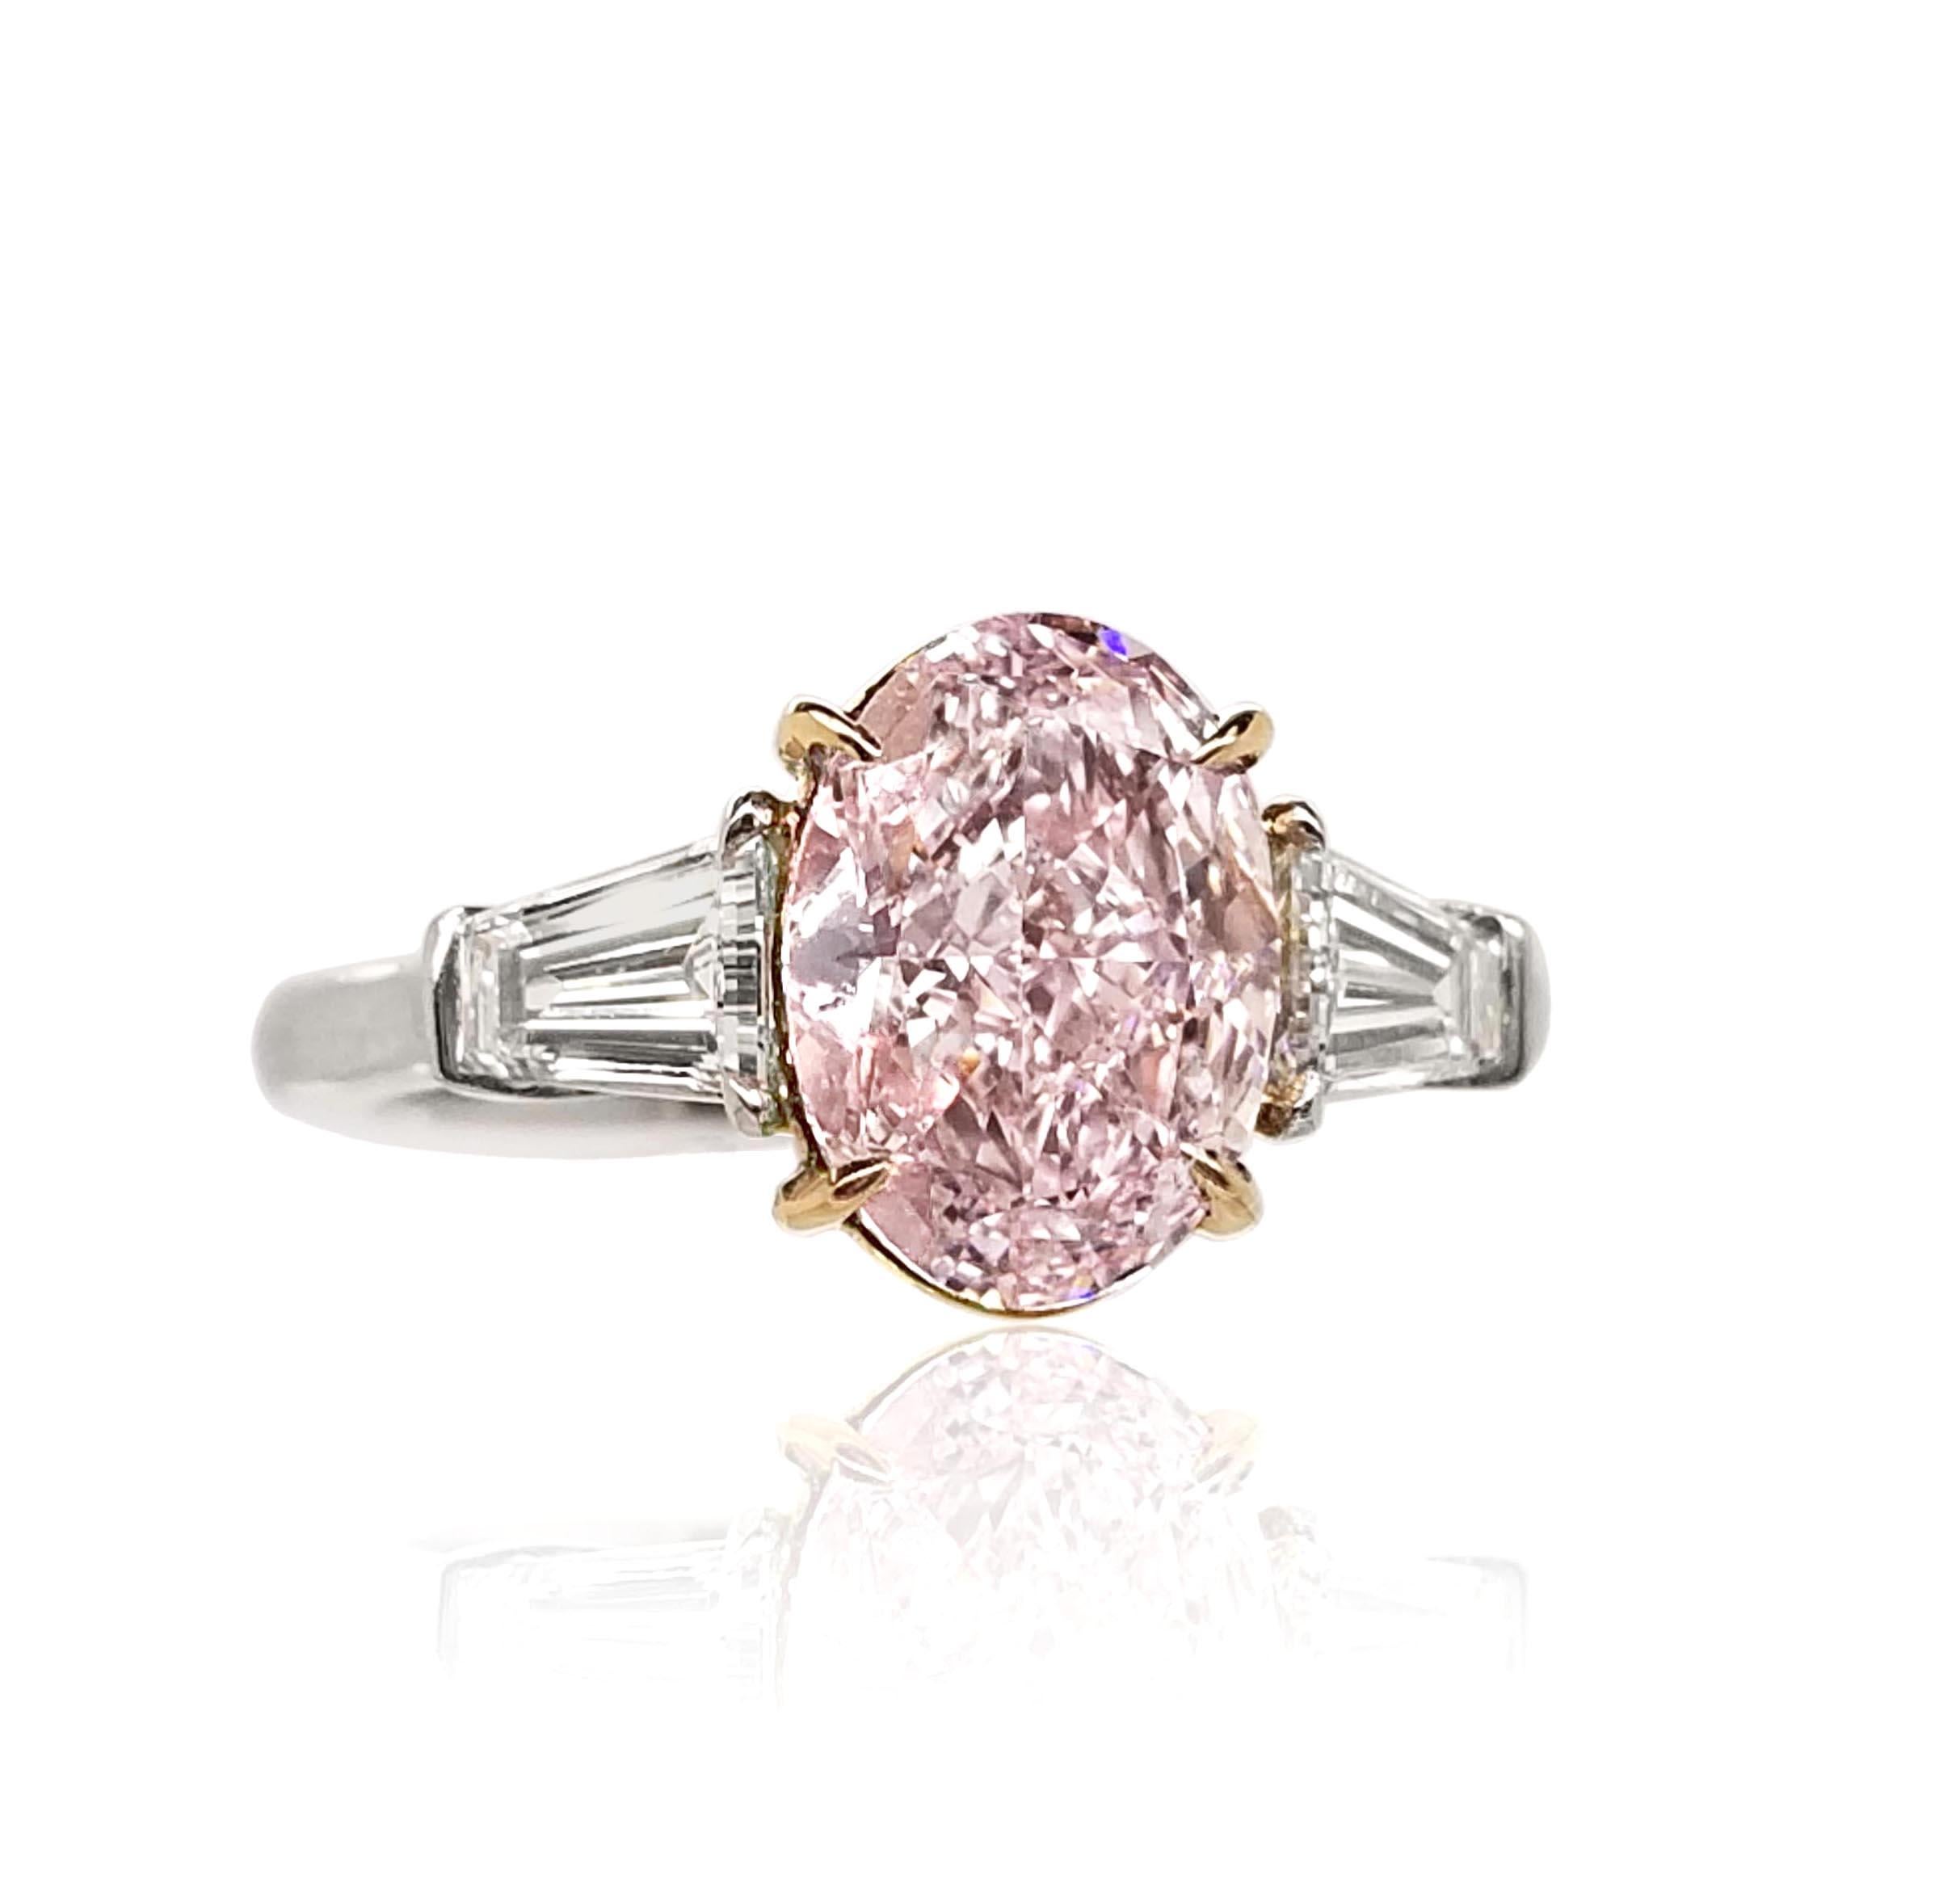 2 carat pink diamond engagement ring